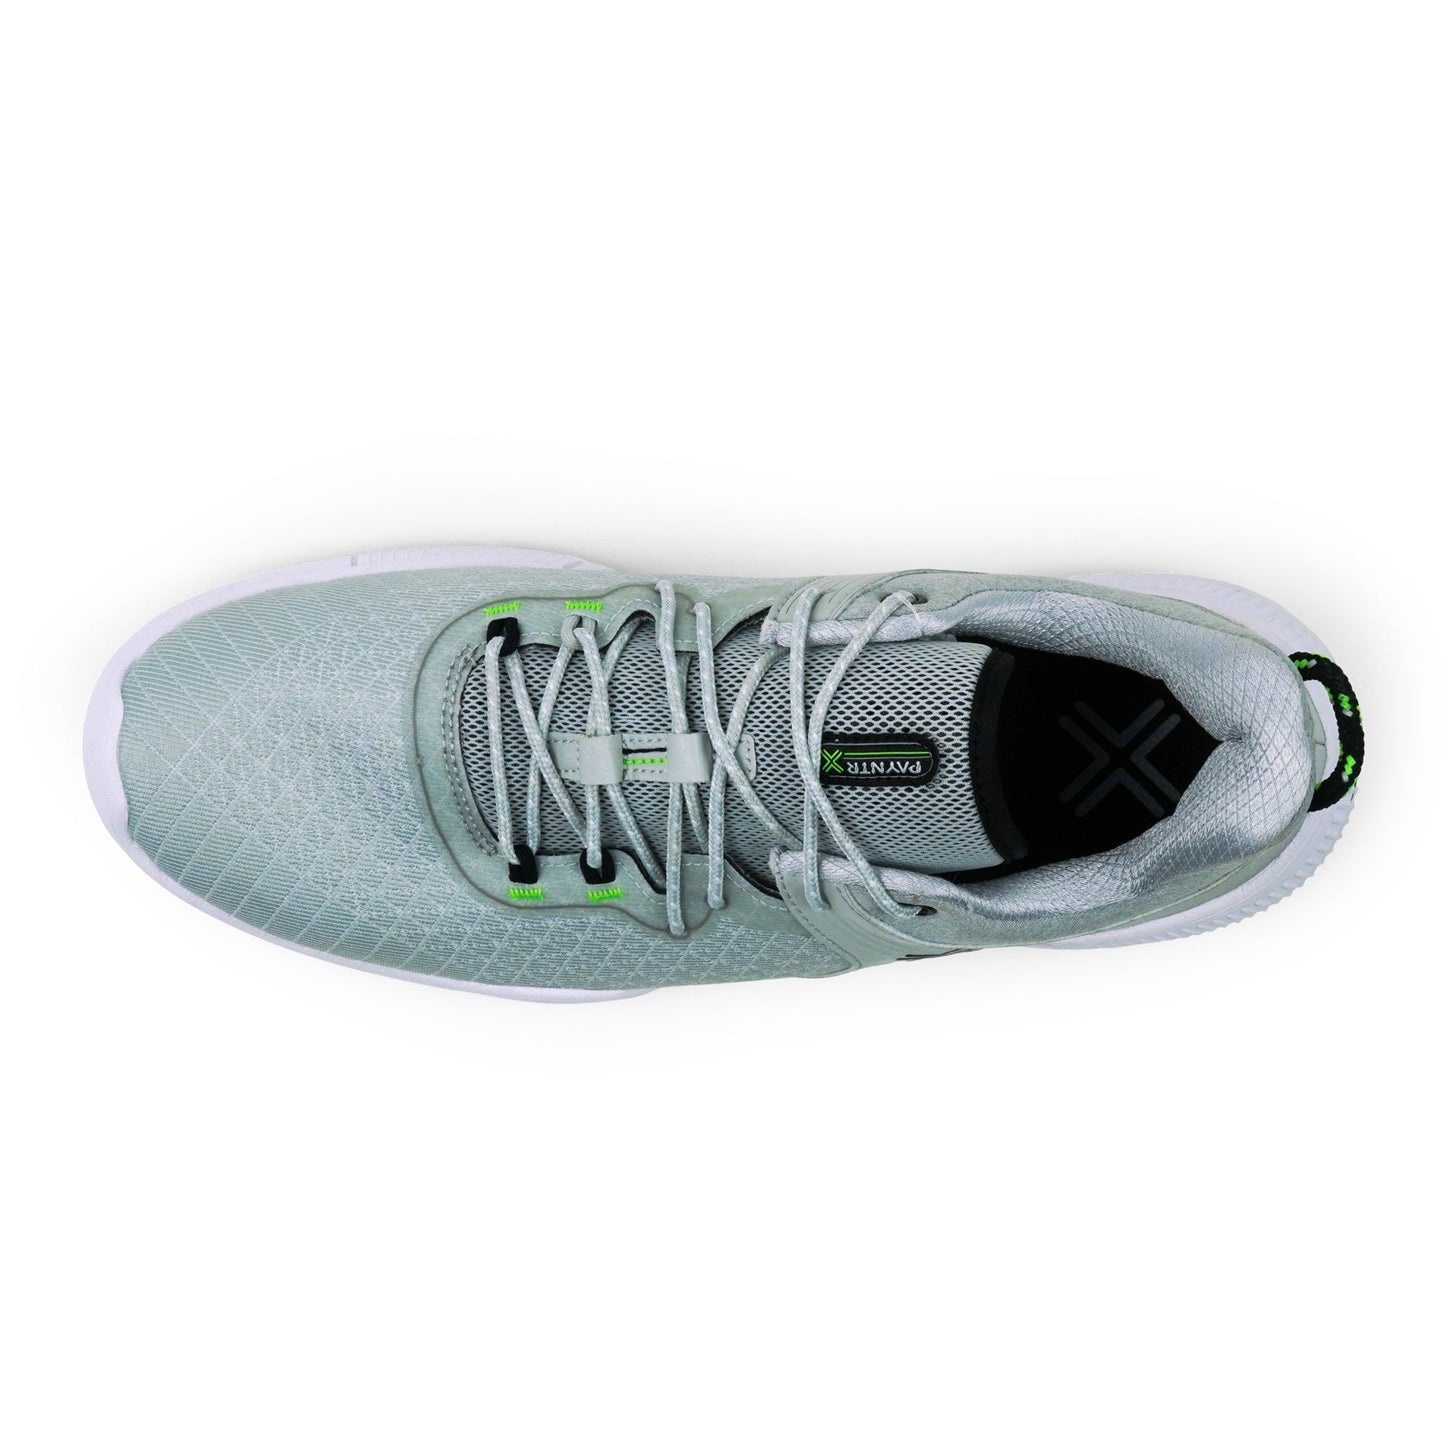 PAYNTR X-001 F Mesh Spikeless Golf Shoes (Grey) - Top